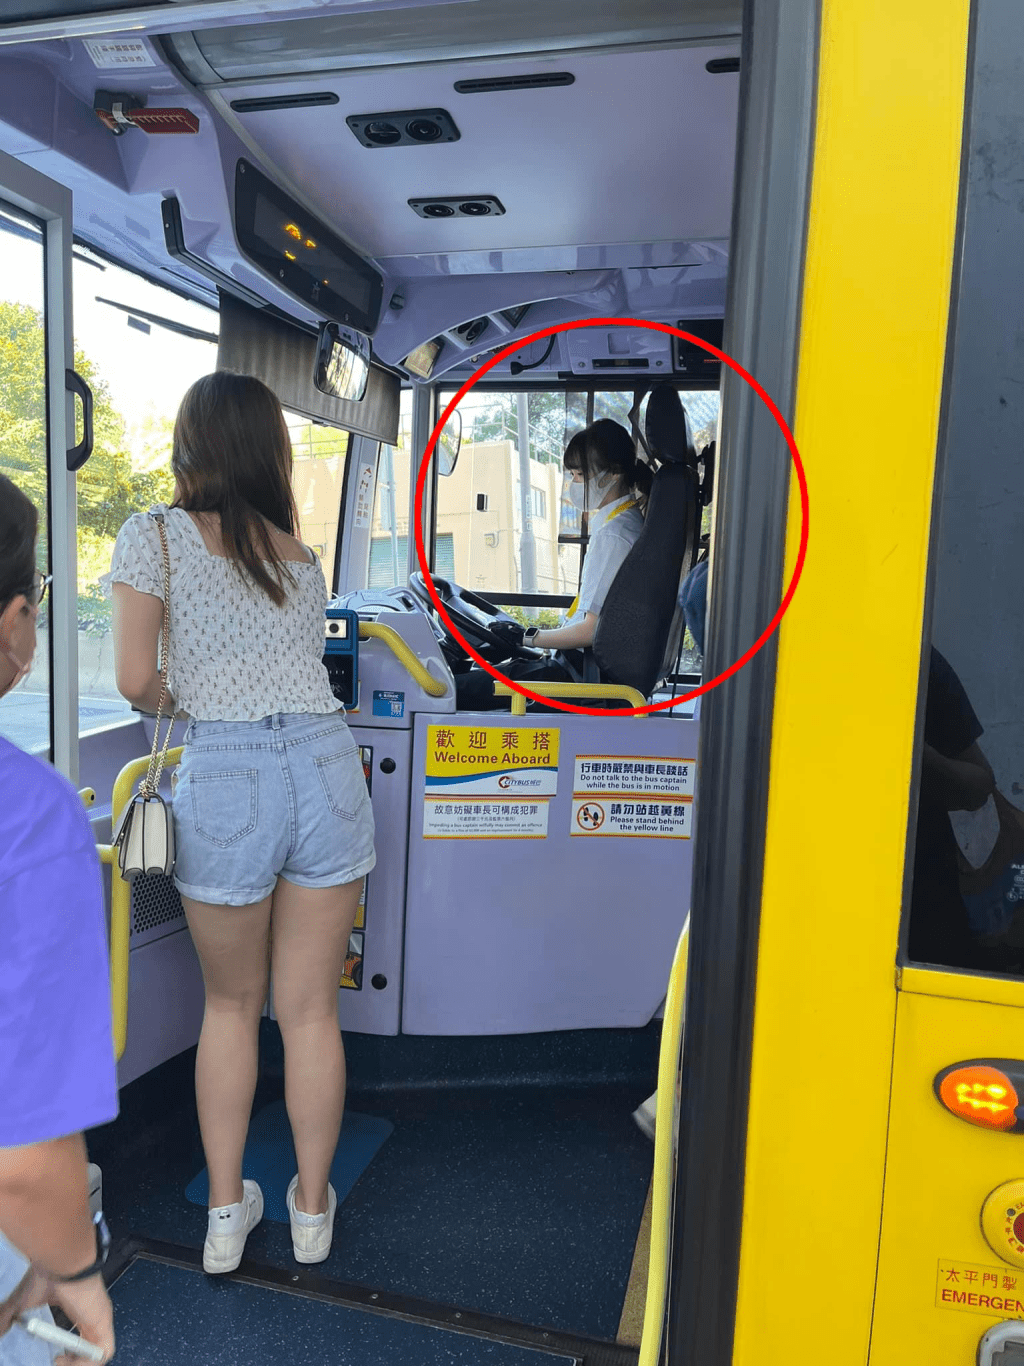 帖文附有一张充满仙气的女巴士司机的侧面照，引发网民热议。